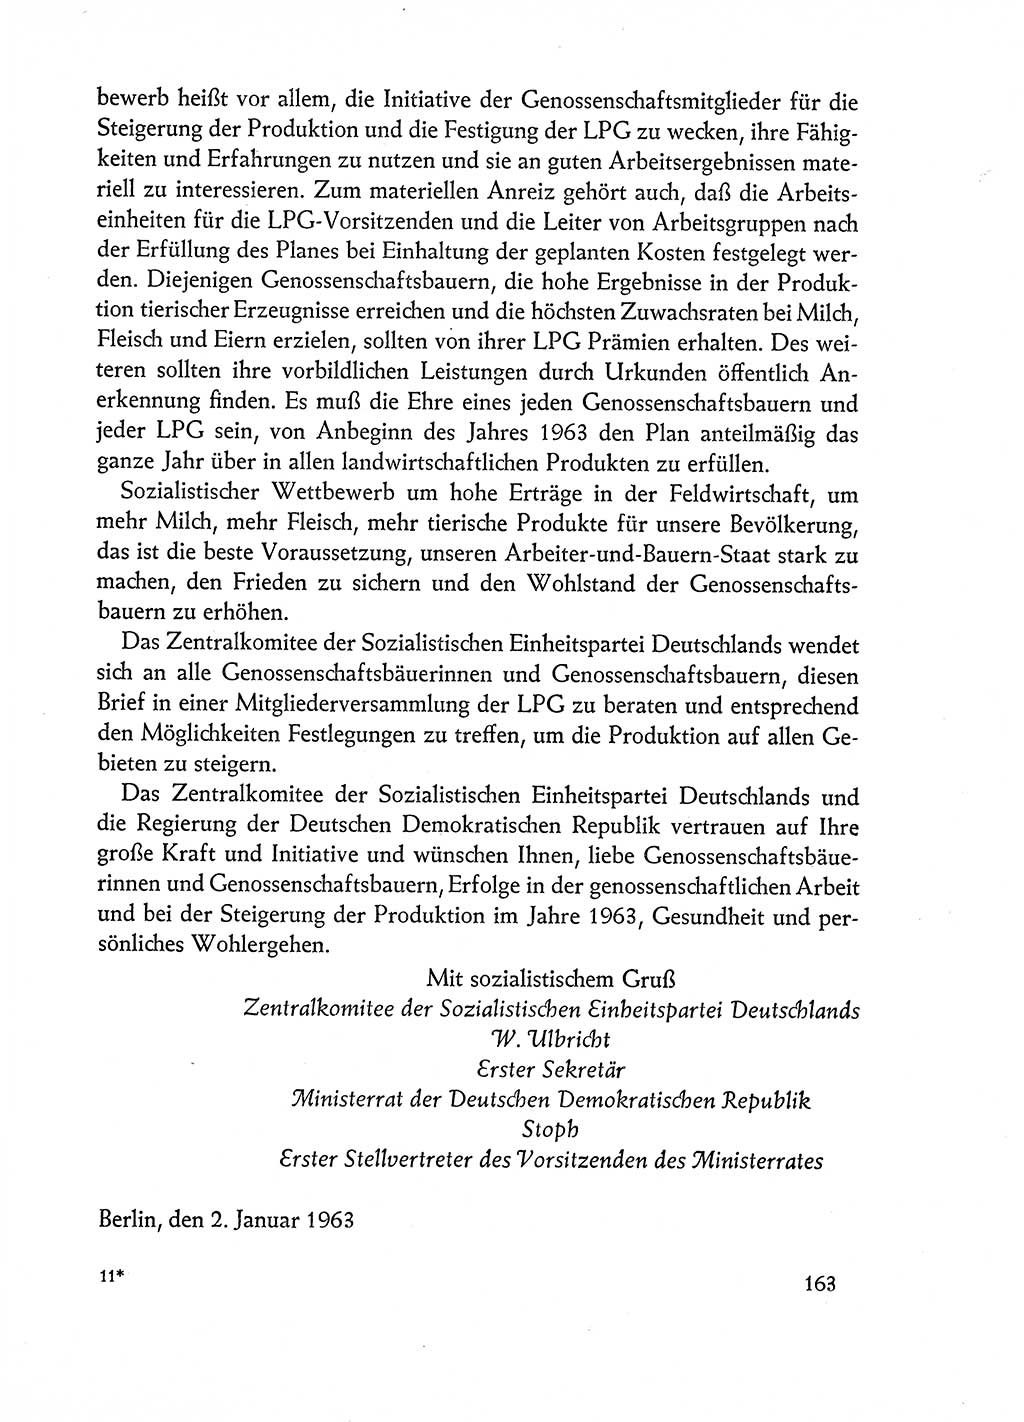 Dokumente der Sozialistischen Einheitspartei Deutschlands (SED) [Deutsche Demokratische Republik (DDR)] 1962-1963, Seite 163 (Dok. SED DDR 1962-1963, S. 163)